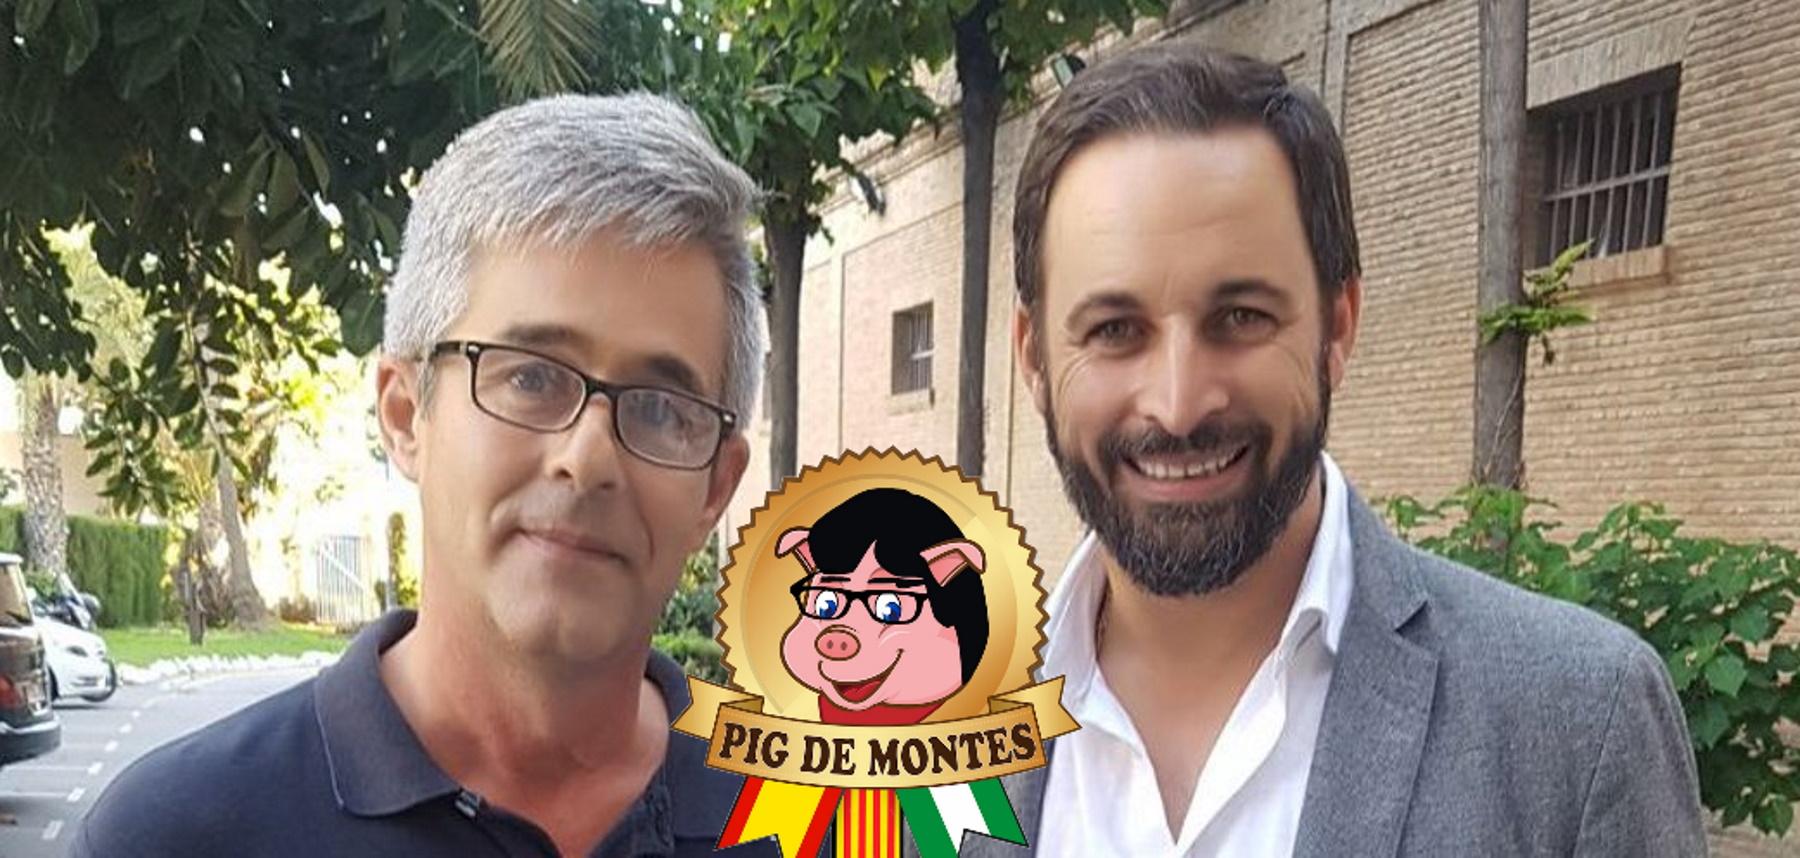 El fundador de los embutidos Pig Demont, Alberto González, con el fundador de Vox. Santiago Abascal. Twitter